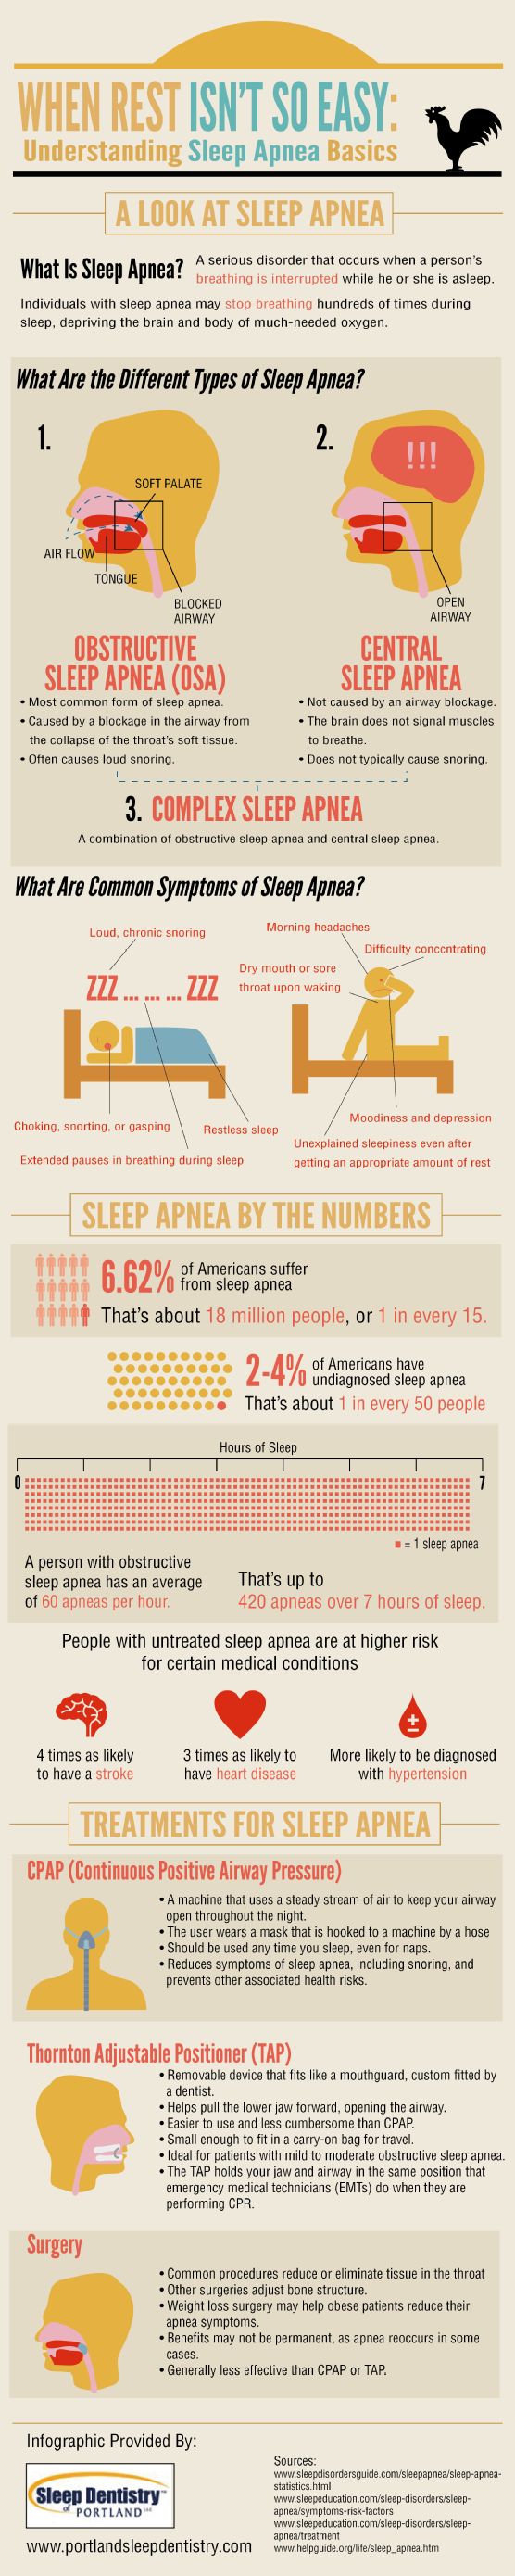 sleep apnea basics infographic